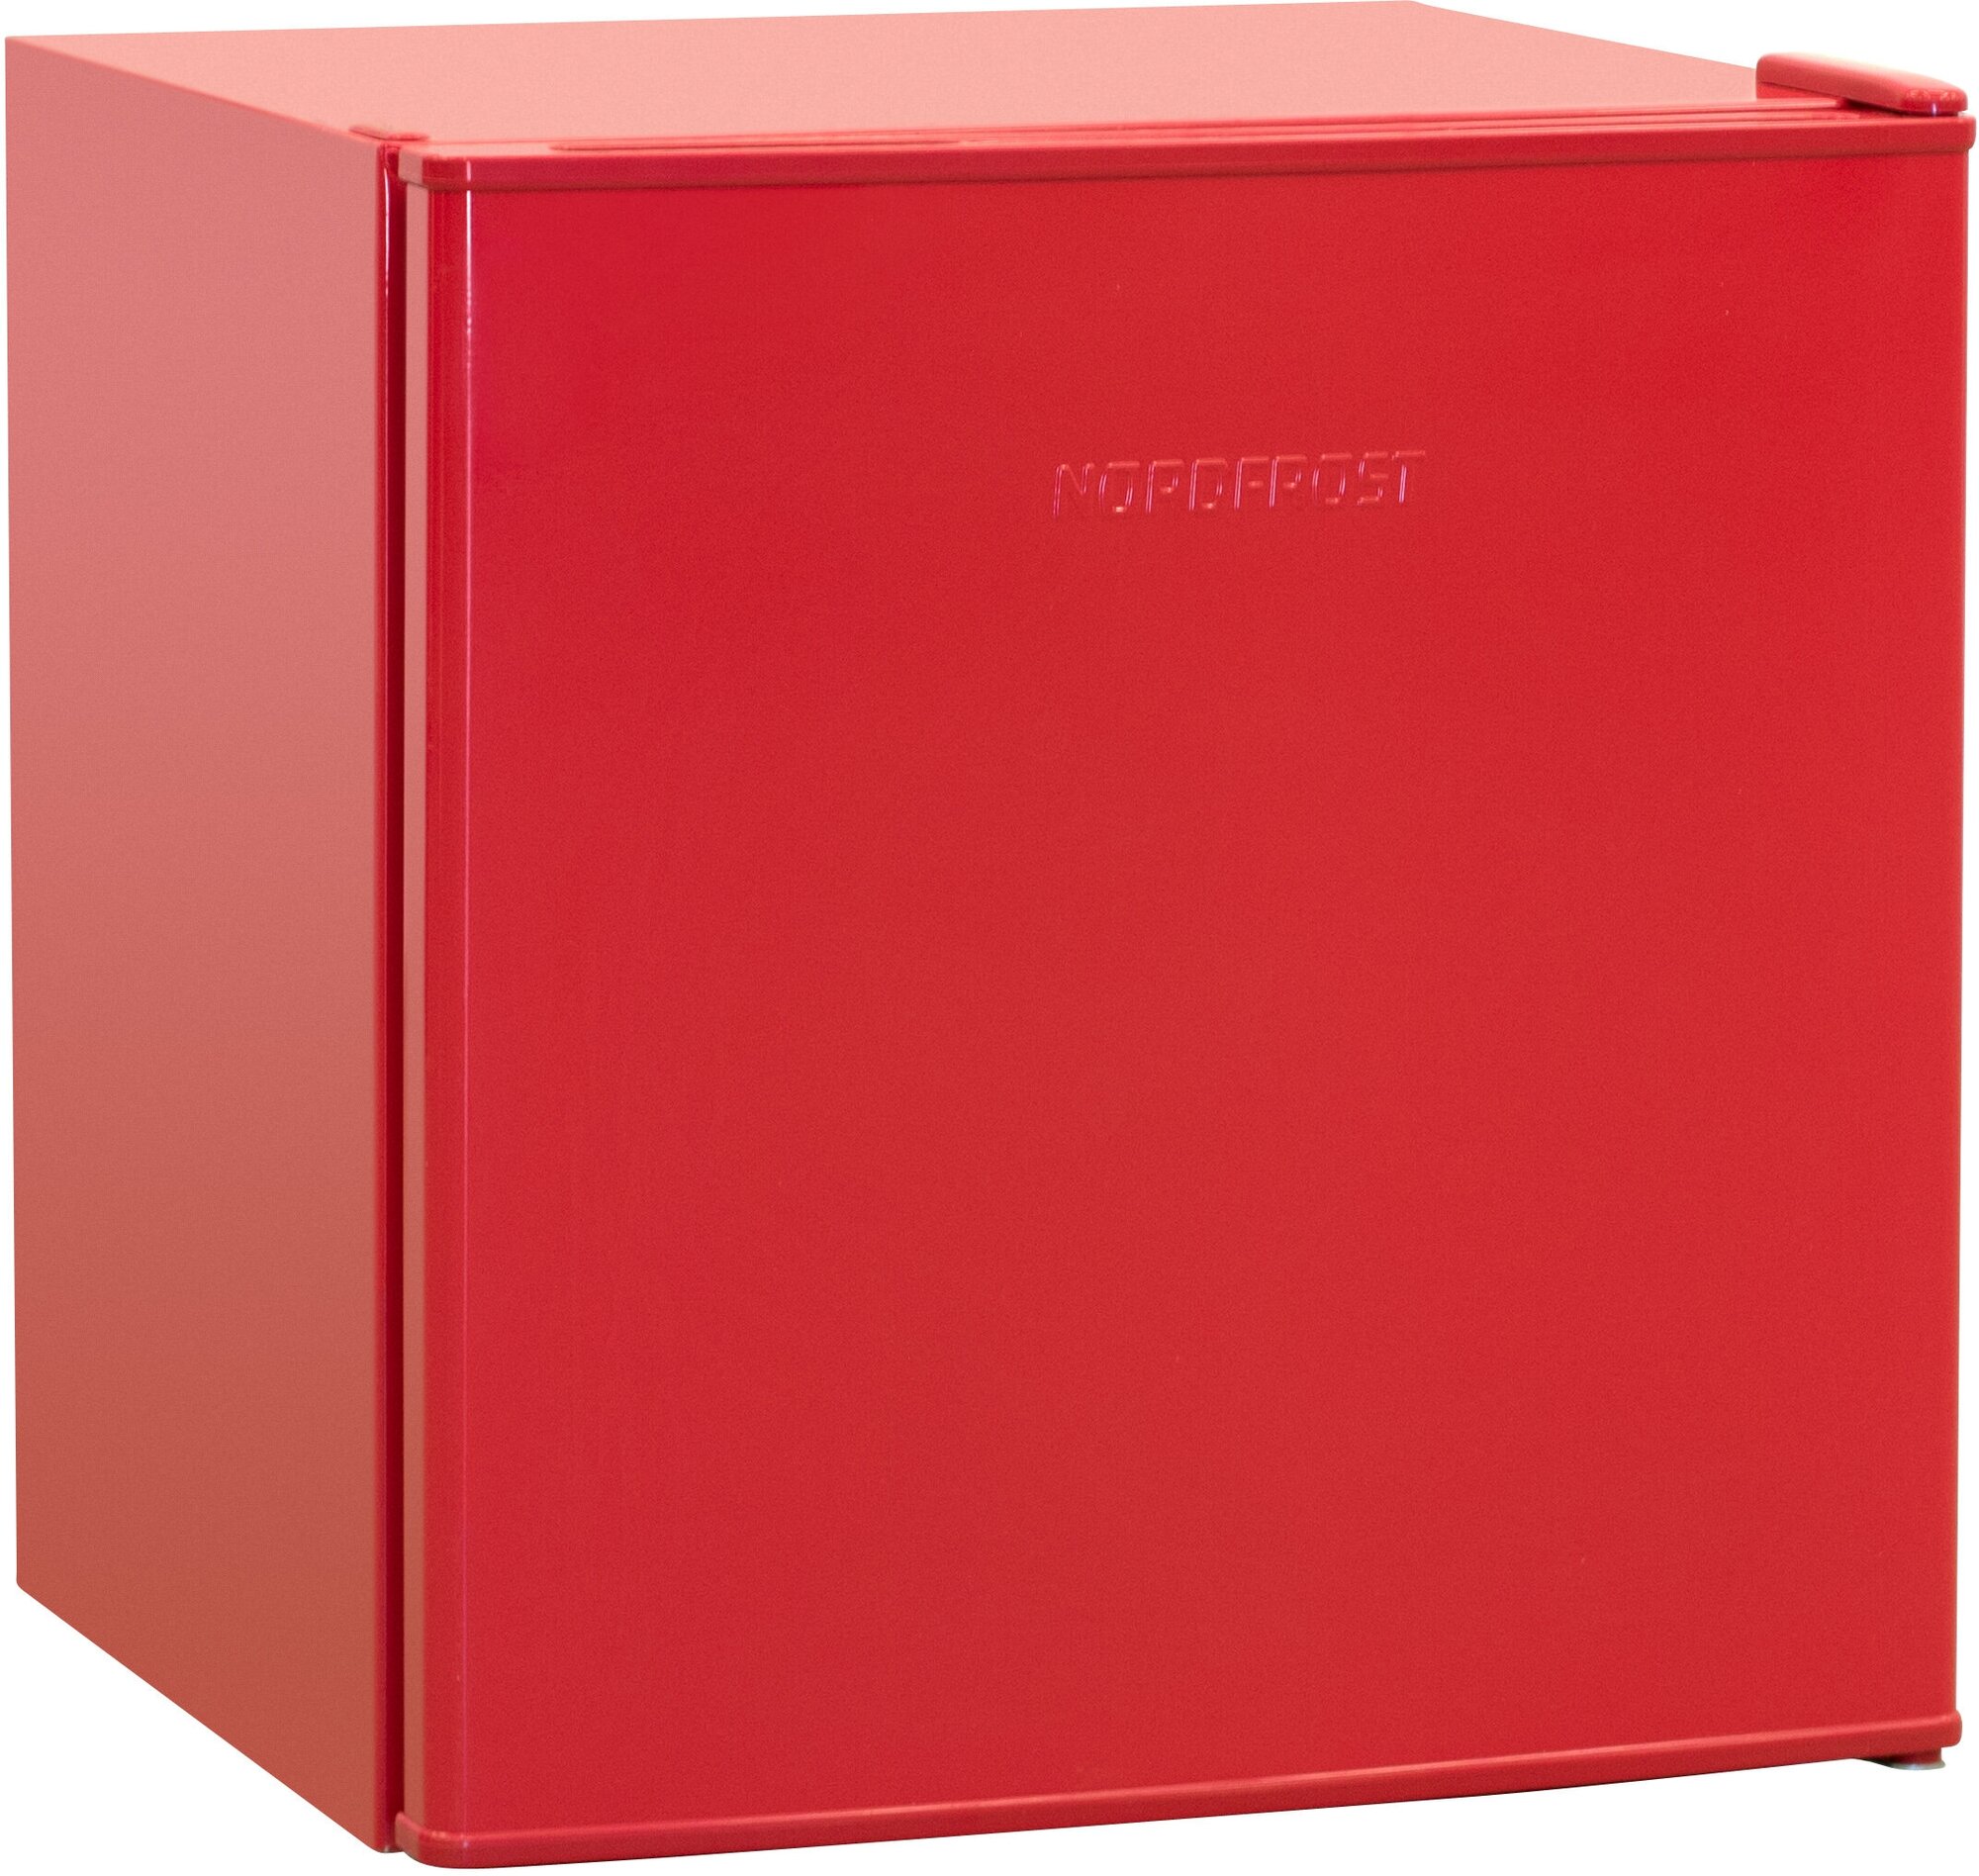 Холодильник NORDFROST NR 506 R однокамерный, 60 л, красный